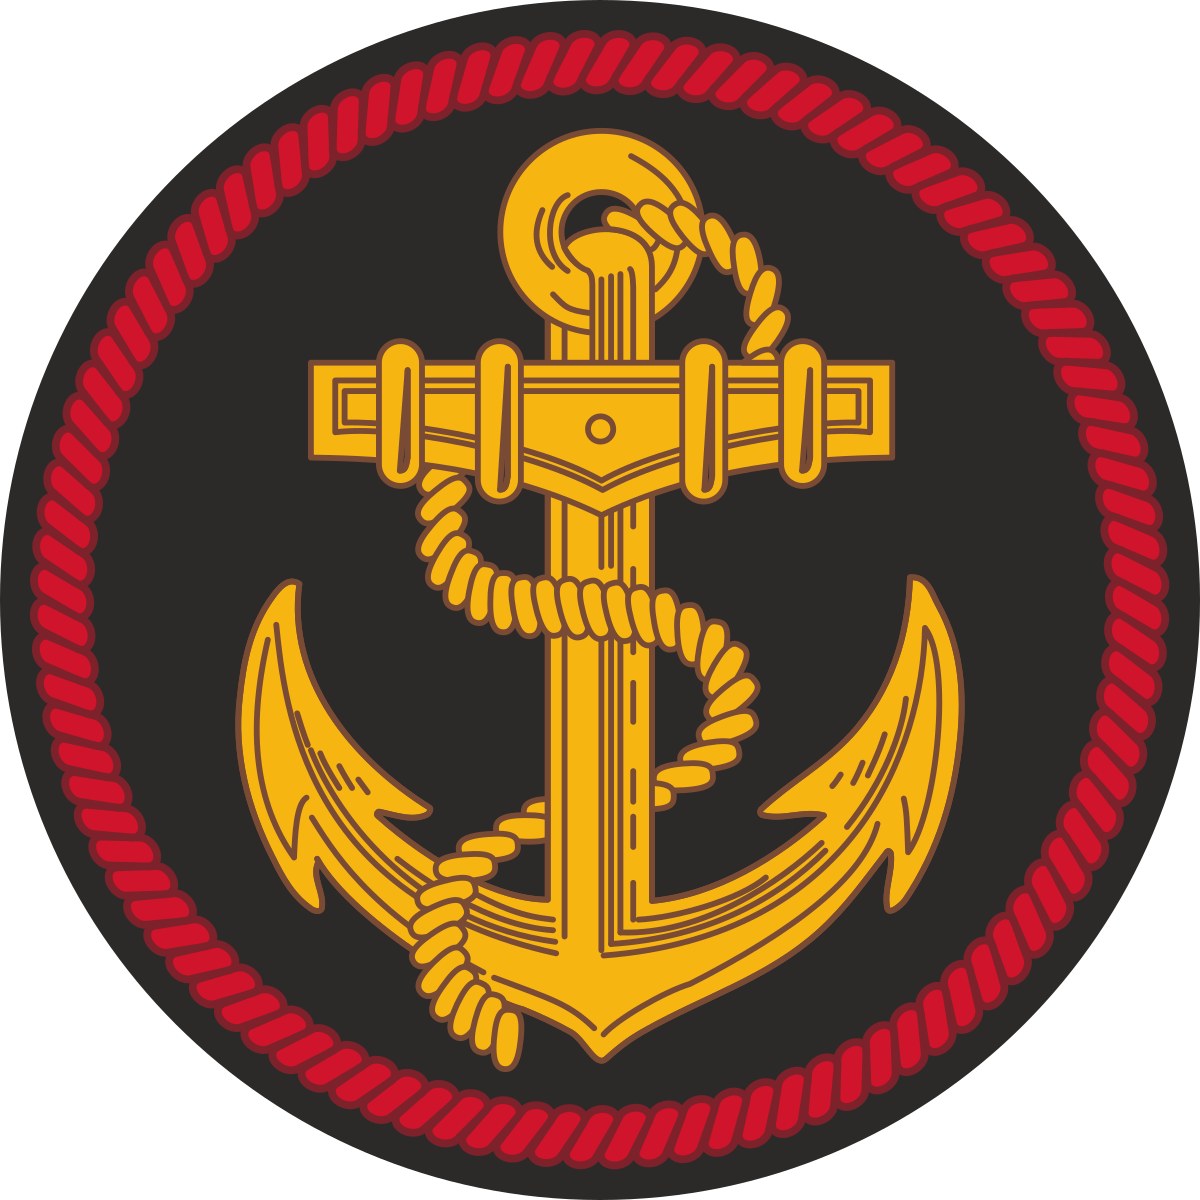 Славянский полк морской пехоты